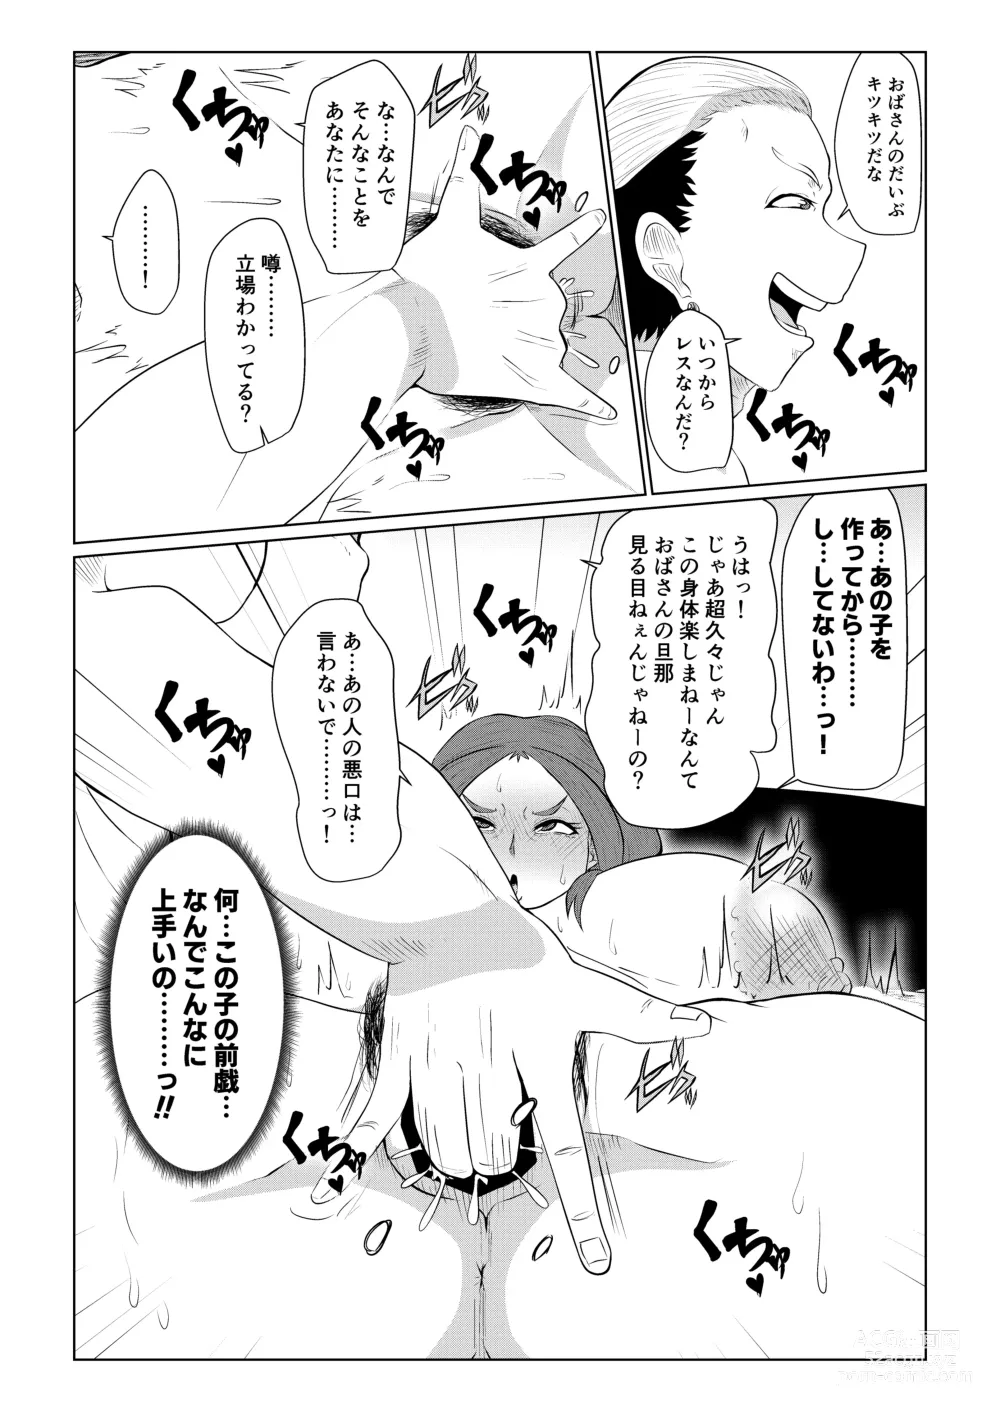 Page 10 of doujinshi Doushite Aitsu nanka ni...